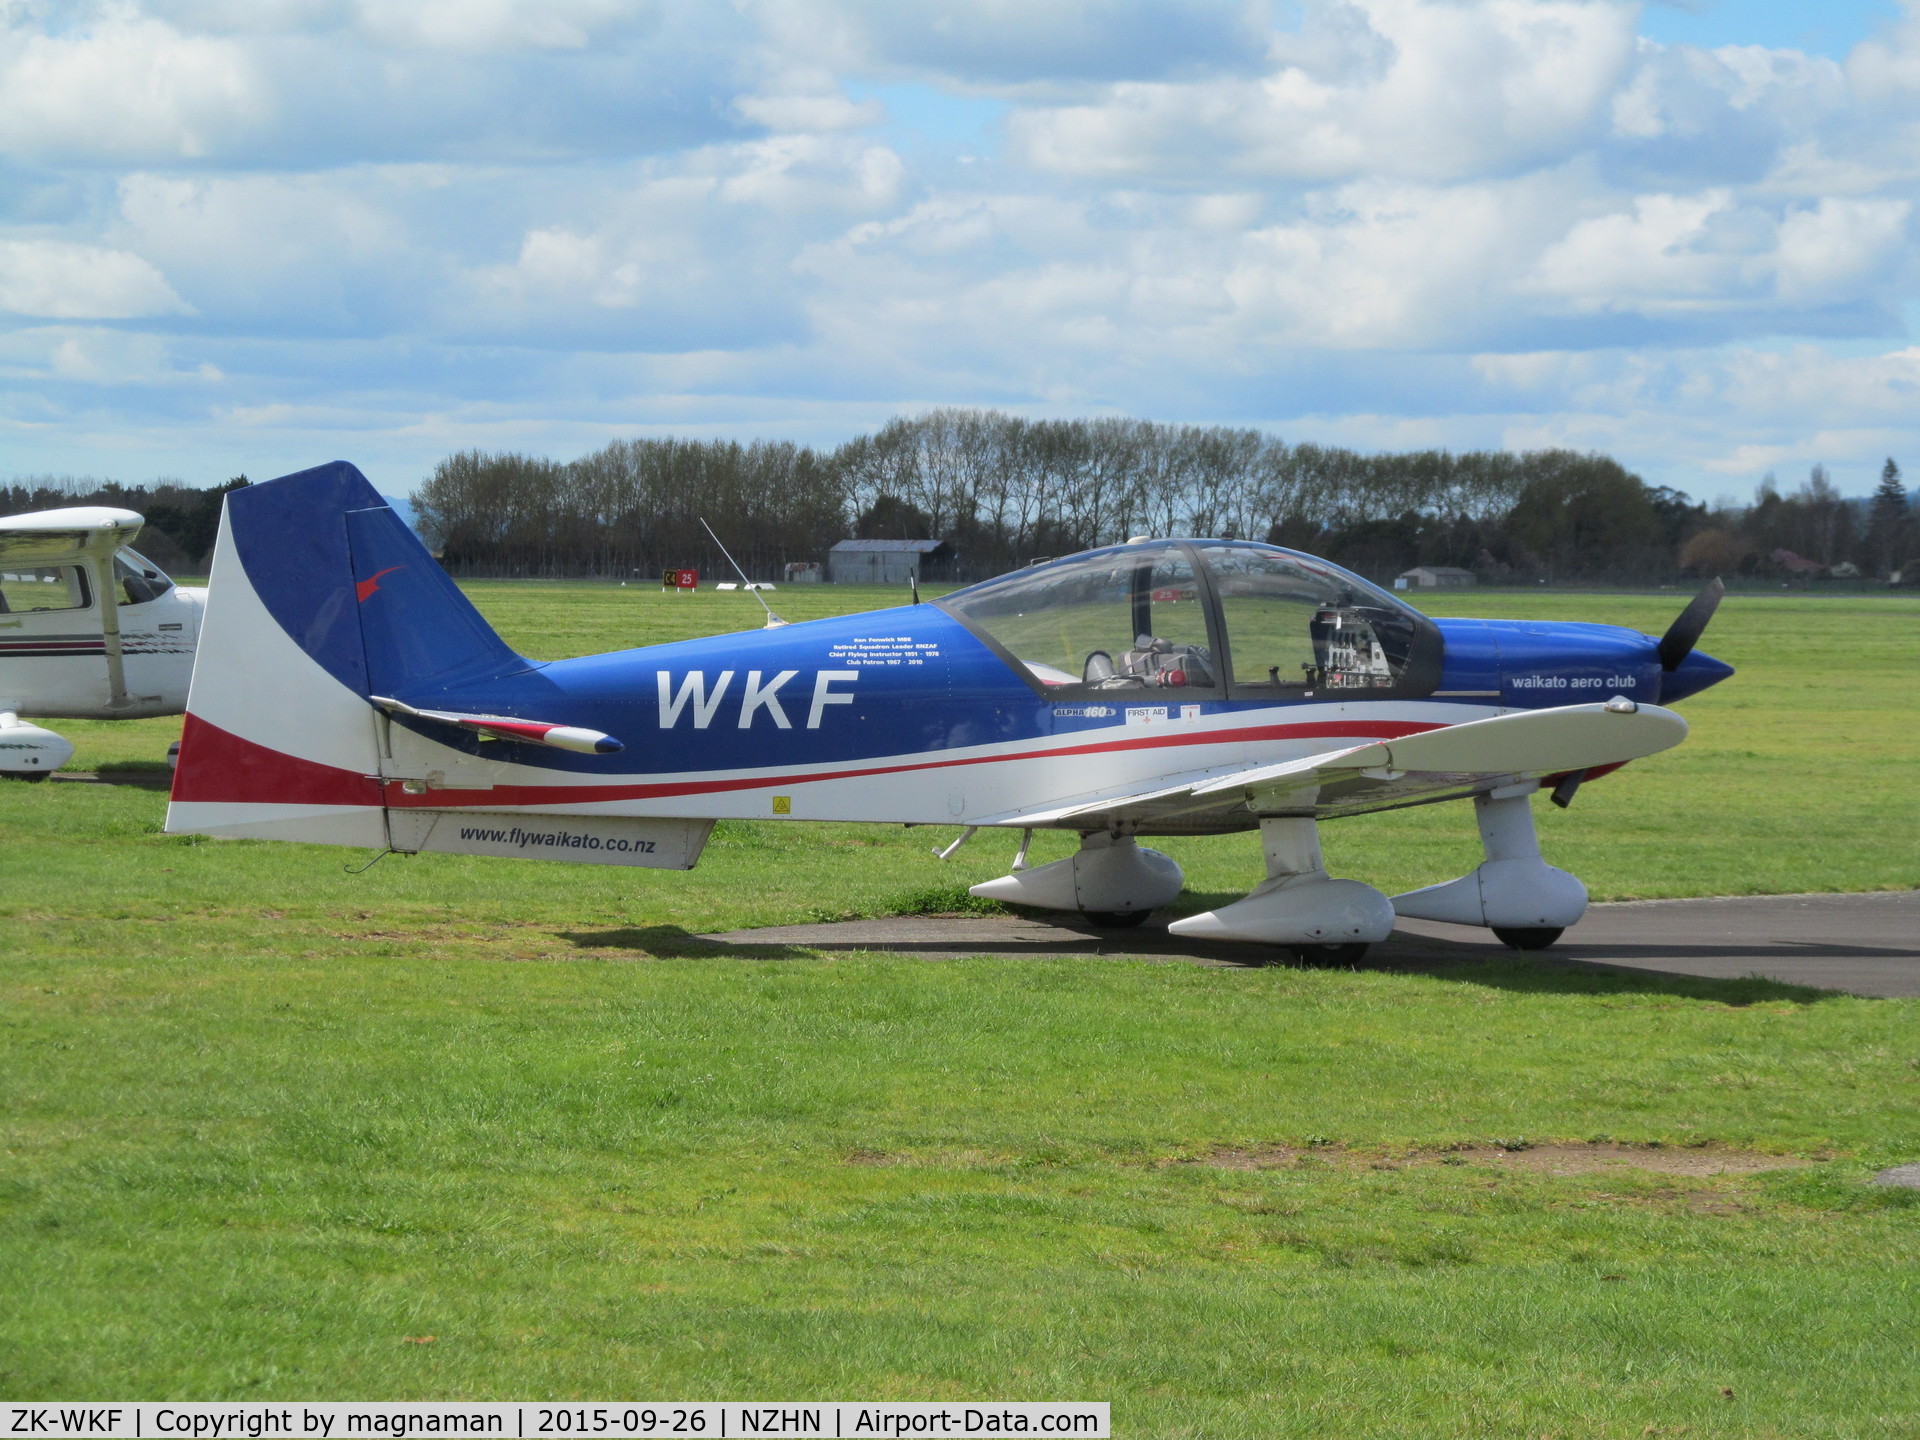 ZK-WKF, 2006 Alpha R2160 C/N 160A-06002, at flying club